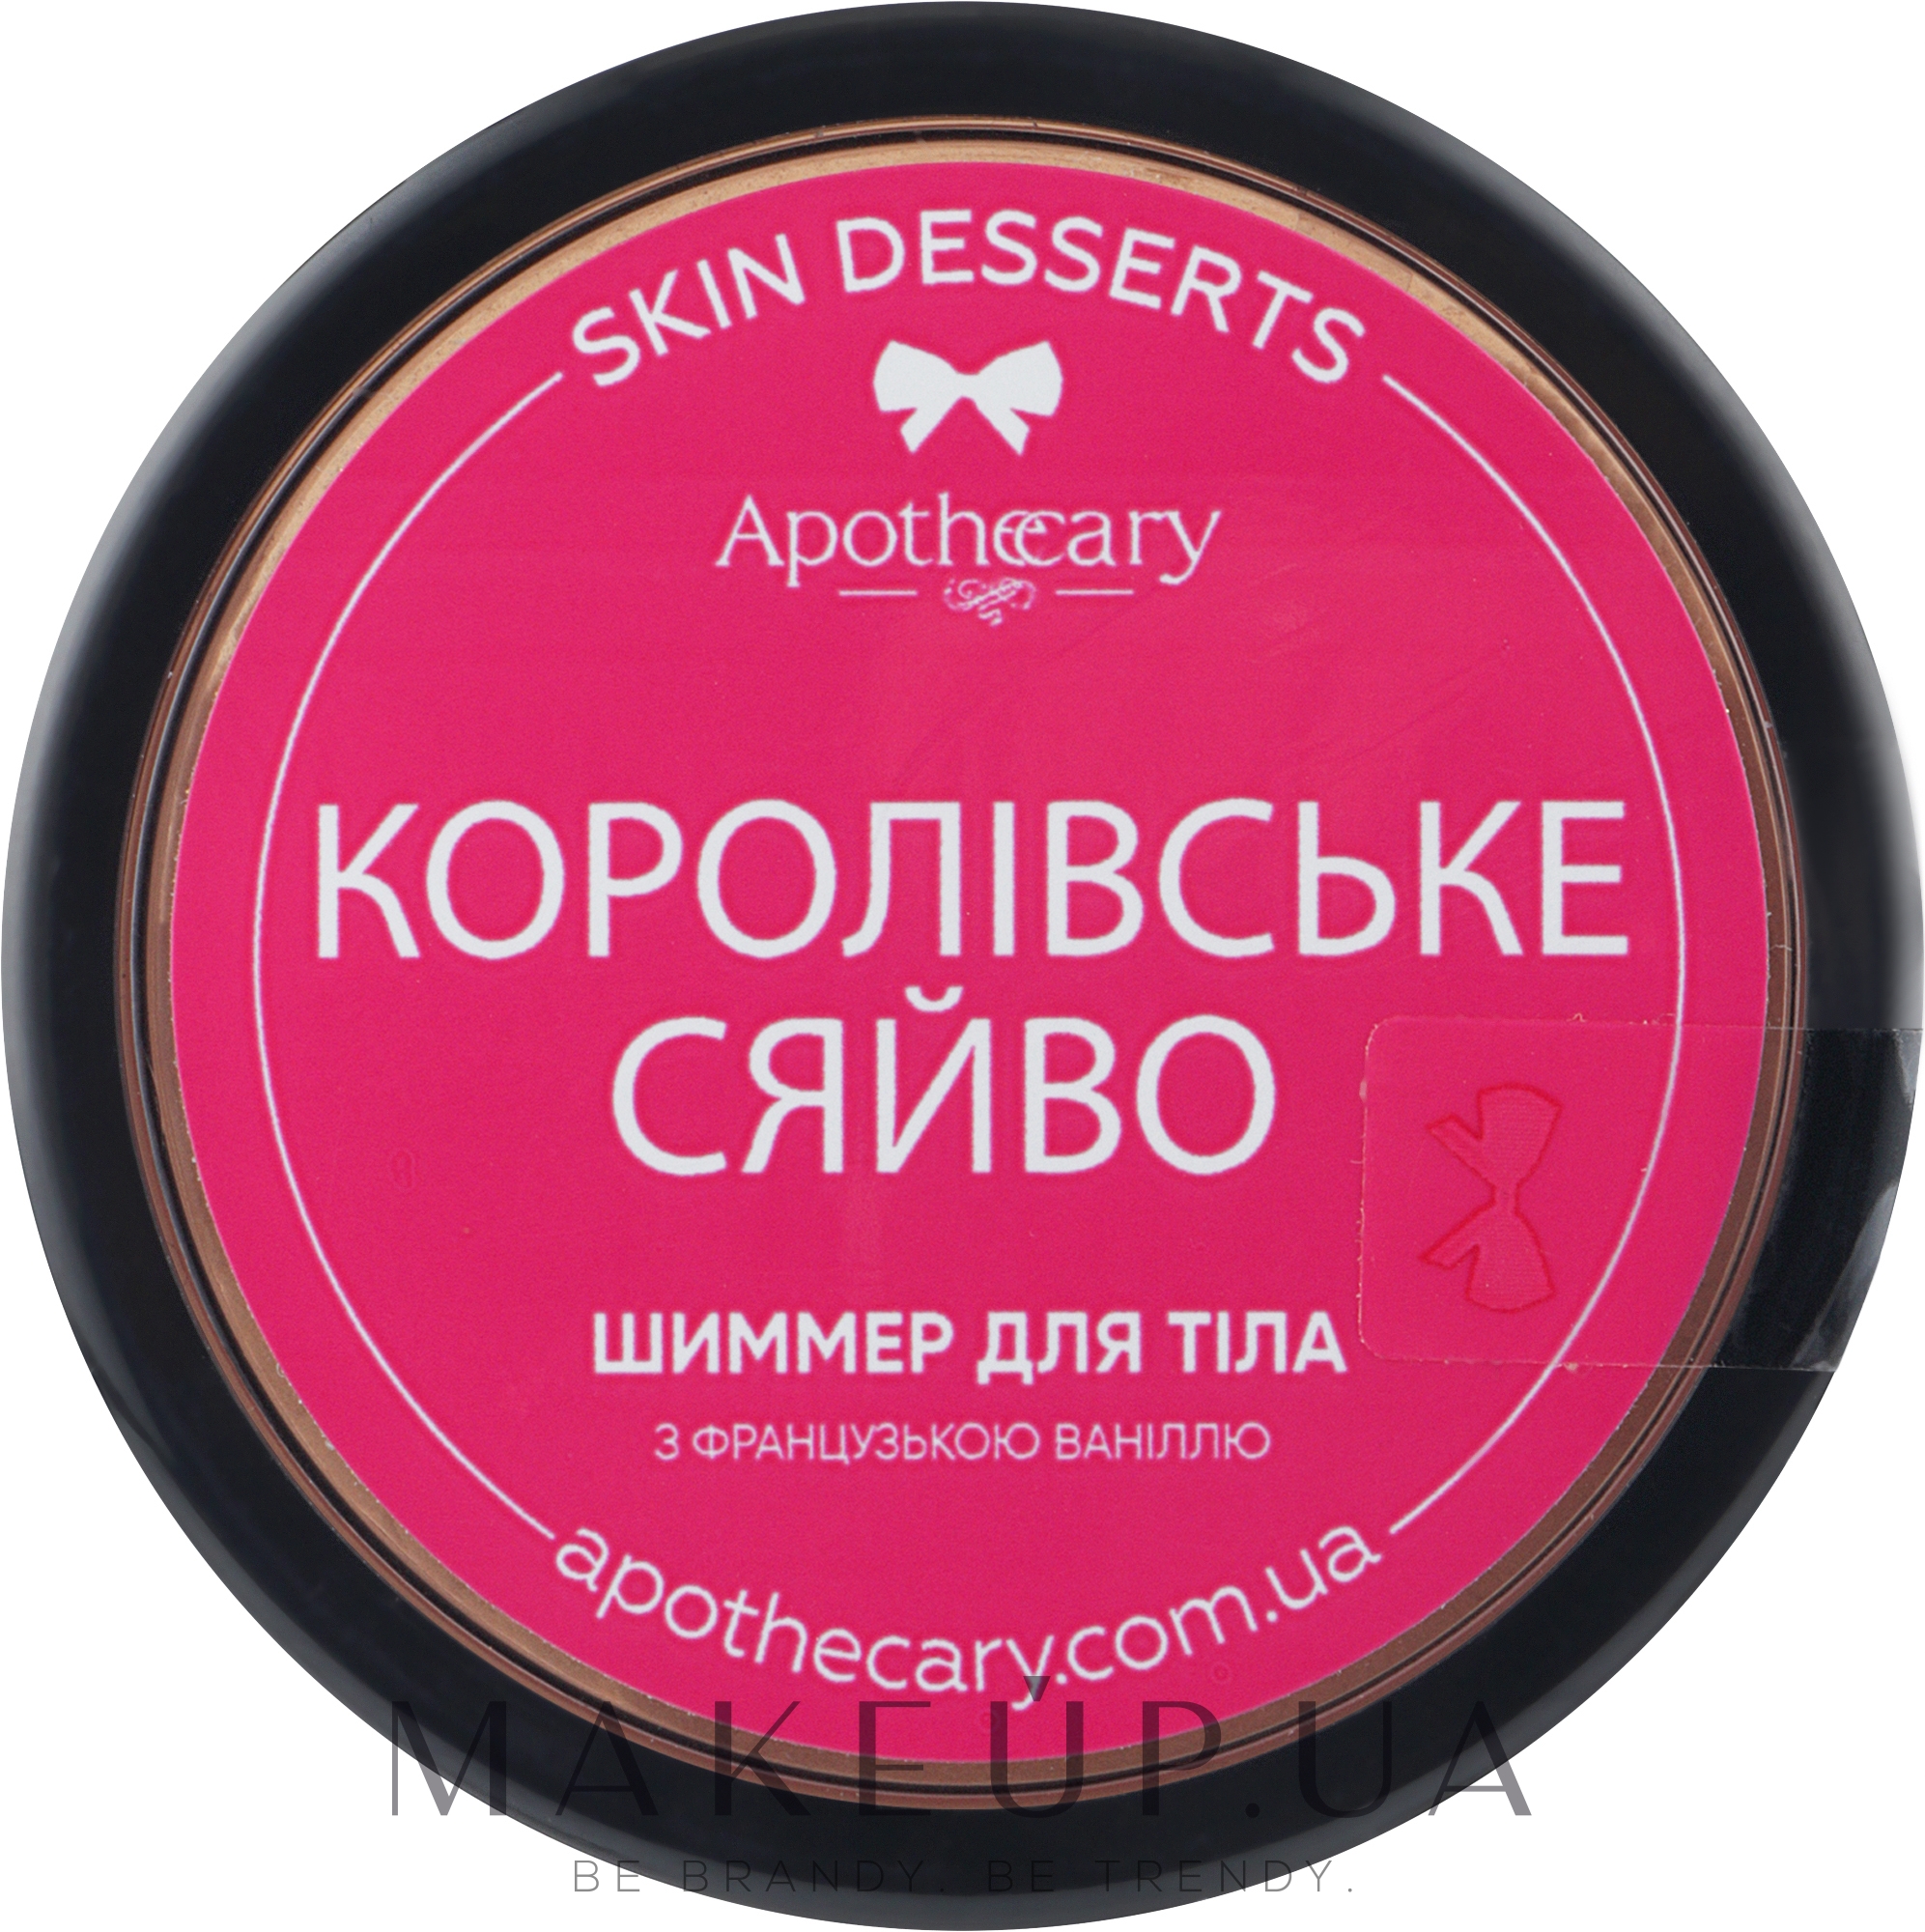 Шимер для тіла "Королівське сяйво" - Apothecary Skin Desserts — фото 16g